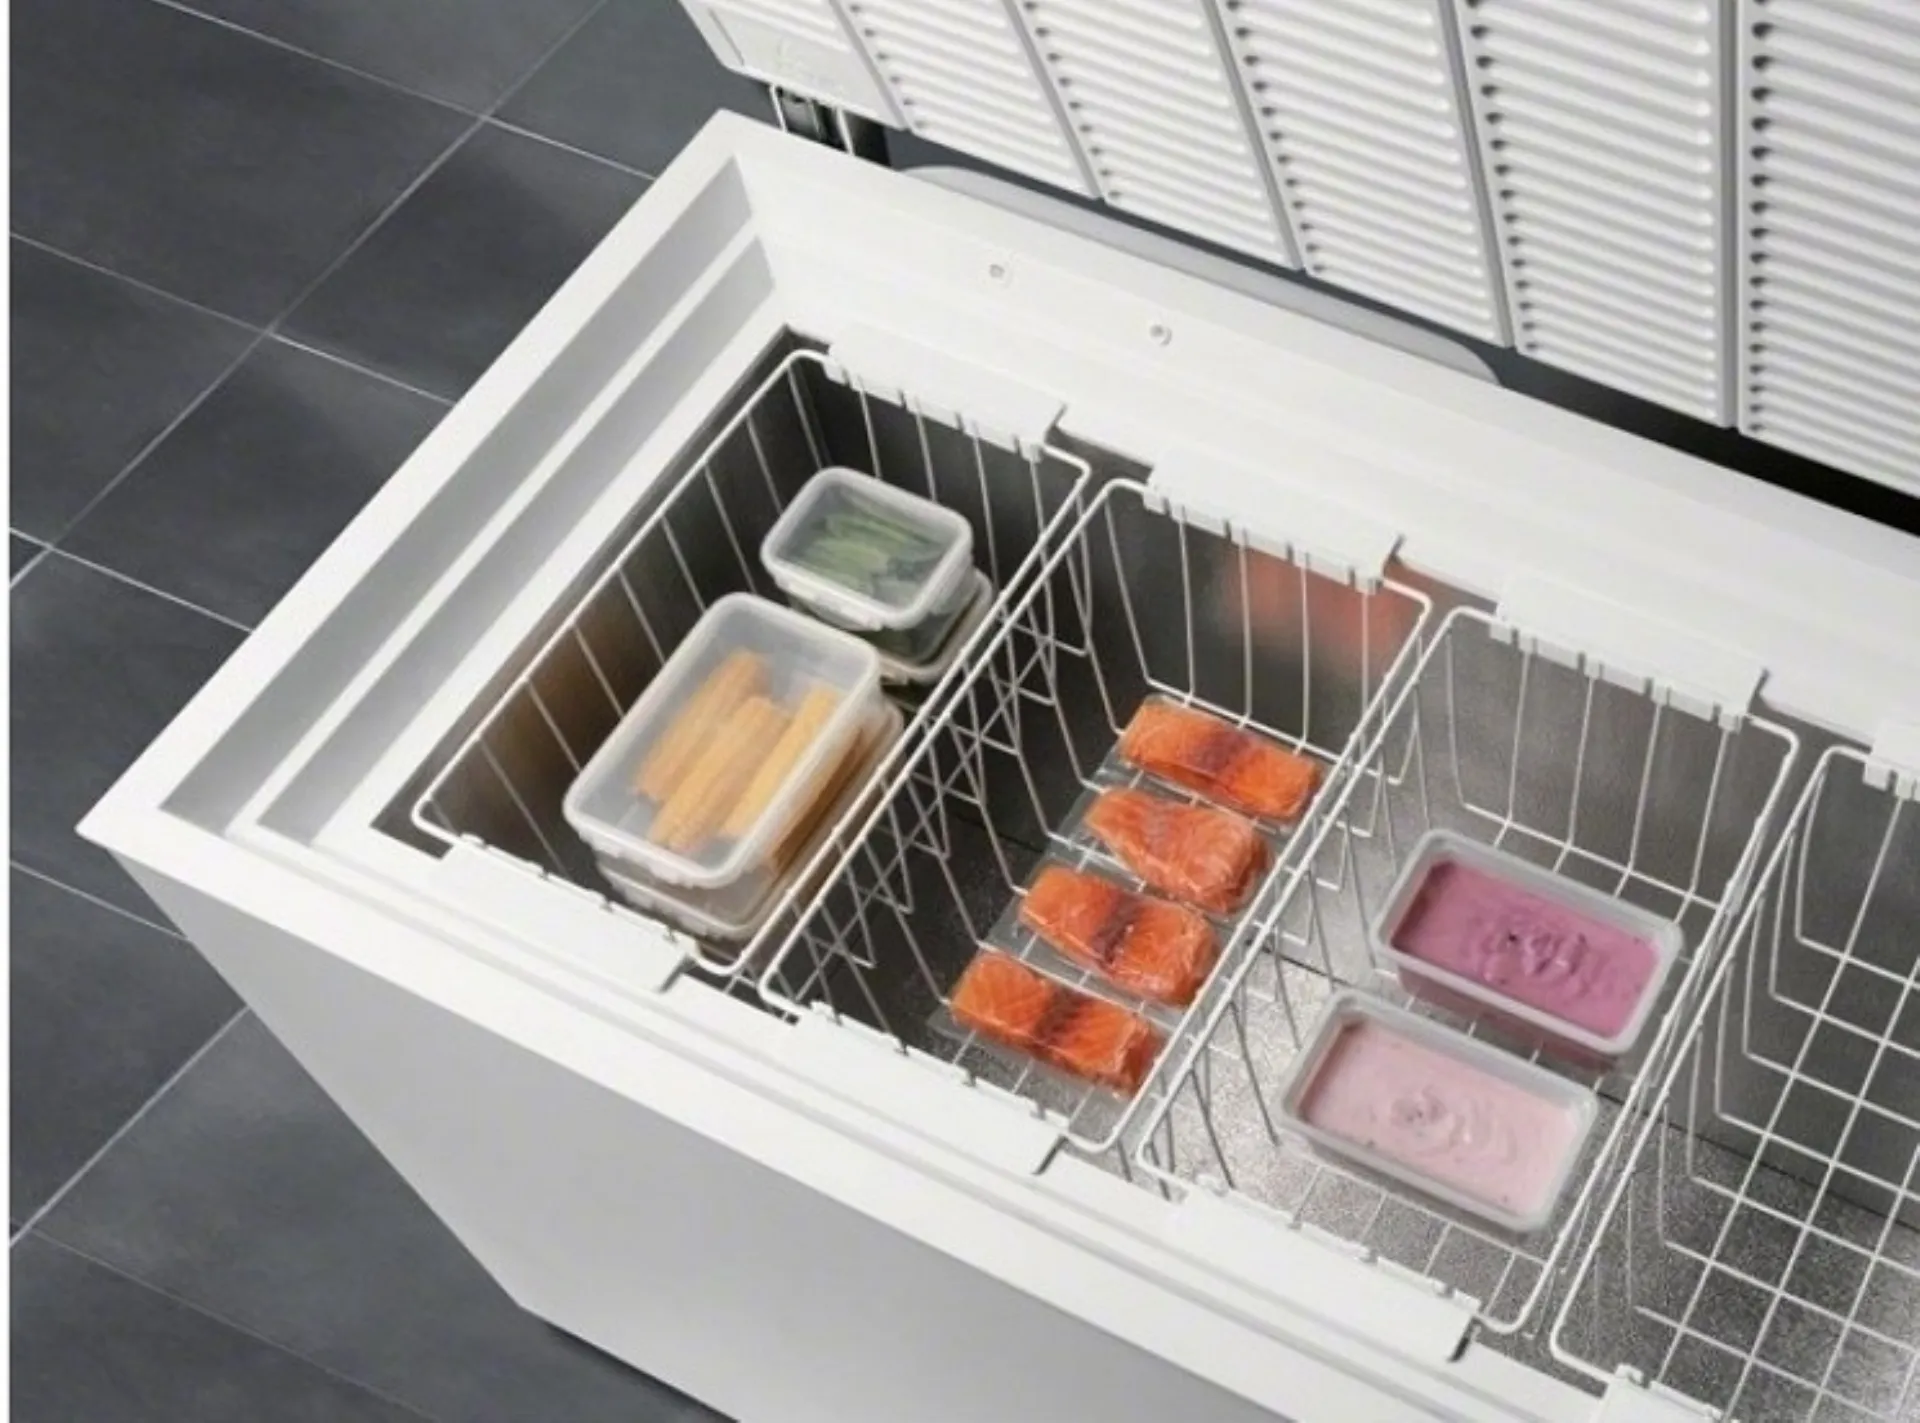 Come integrare un congelatore a pozzetto in una cucina esistente?